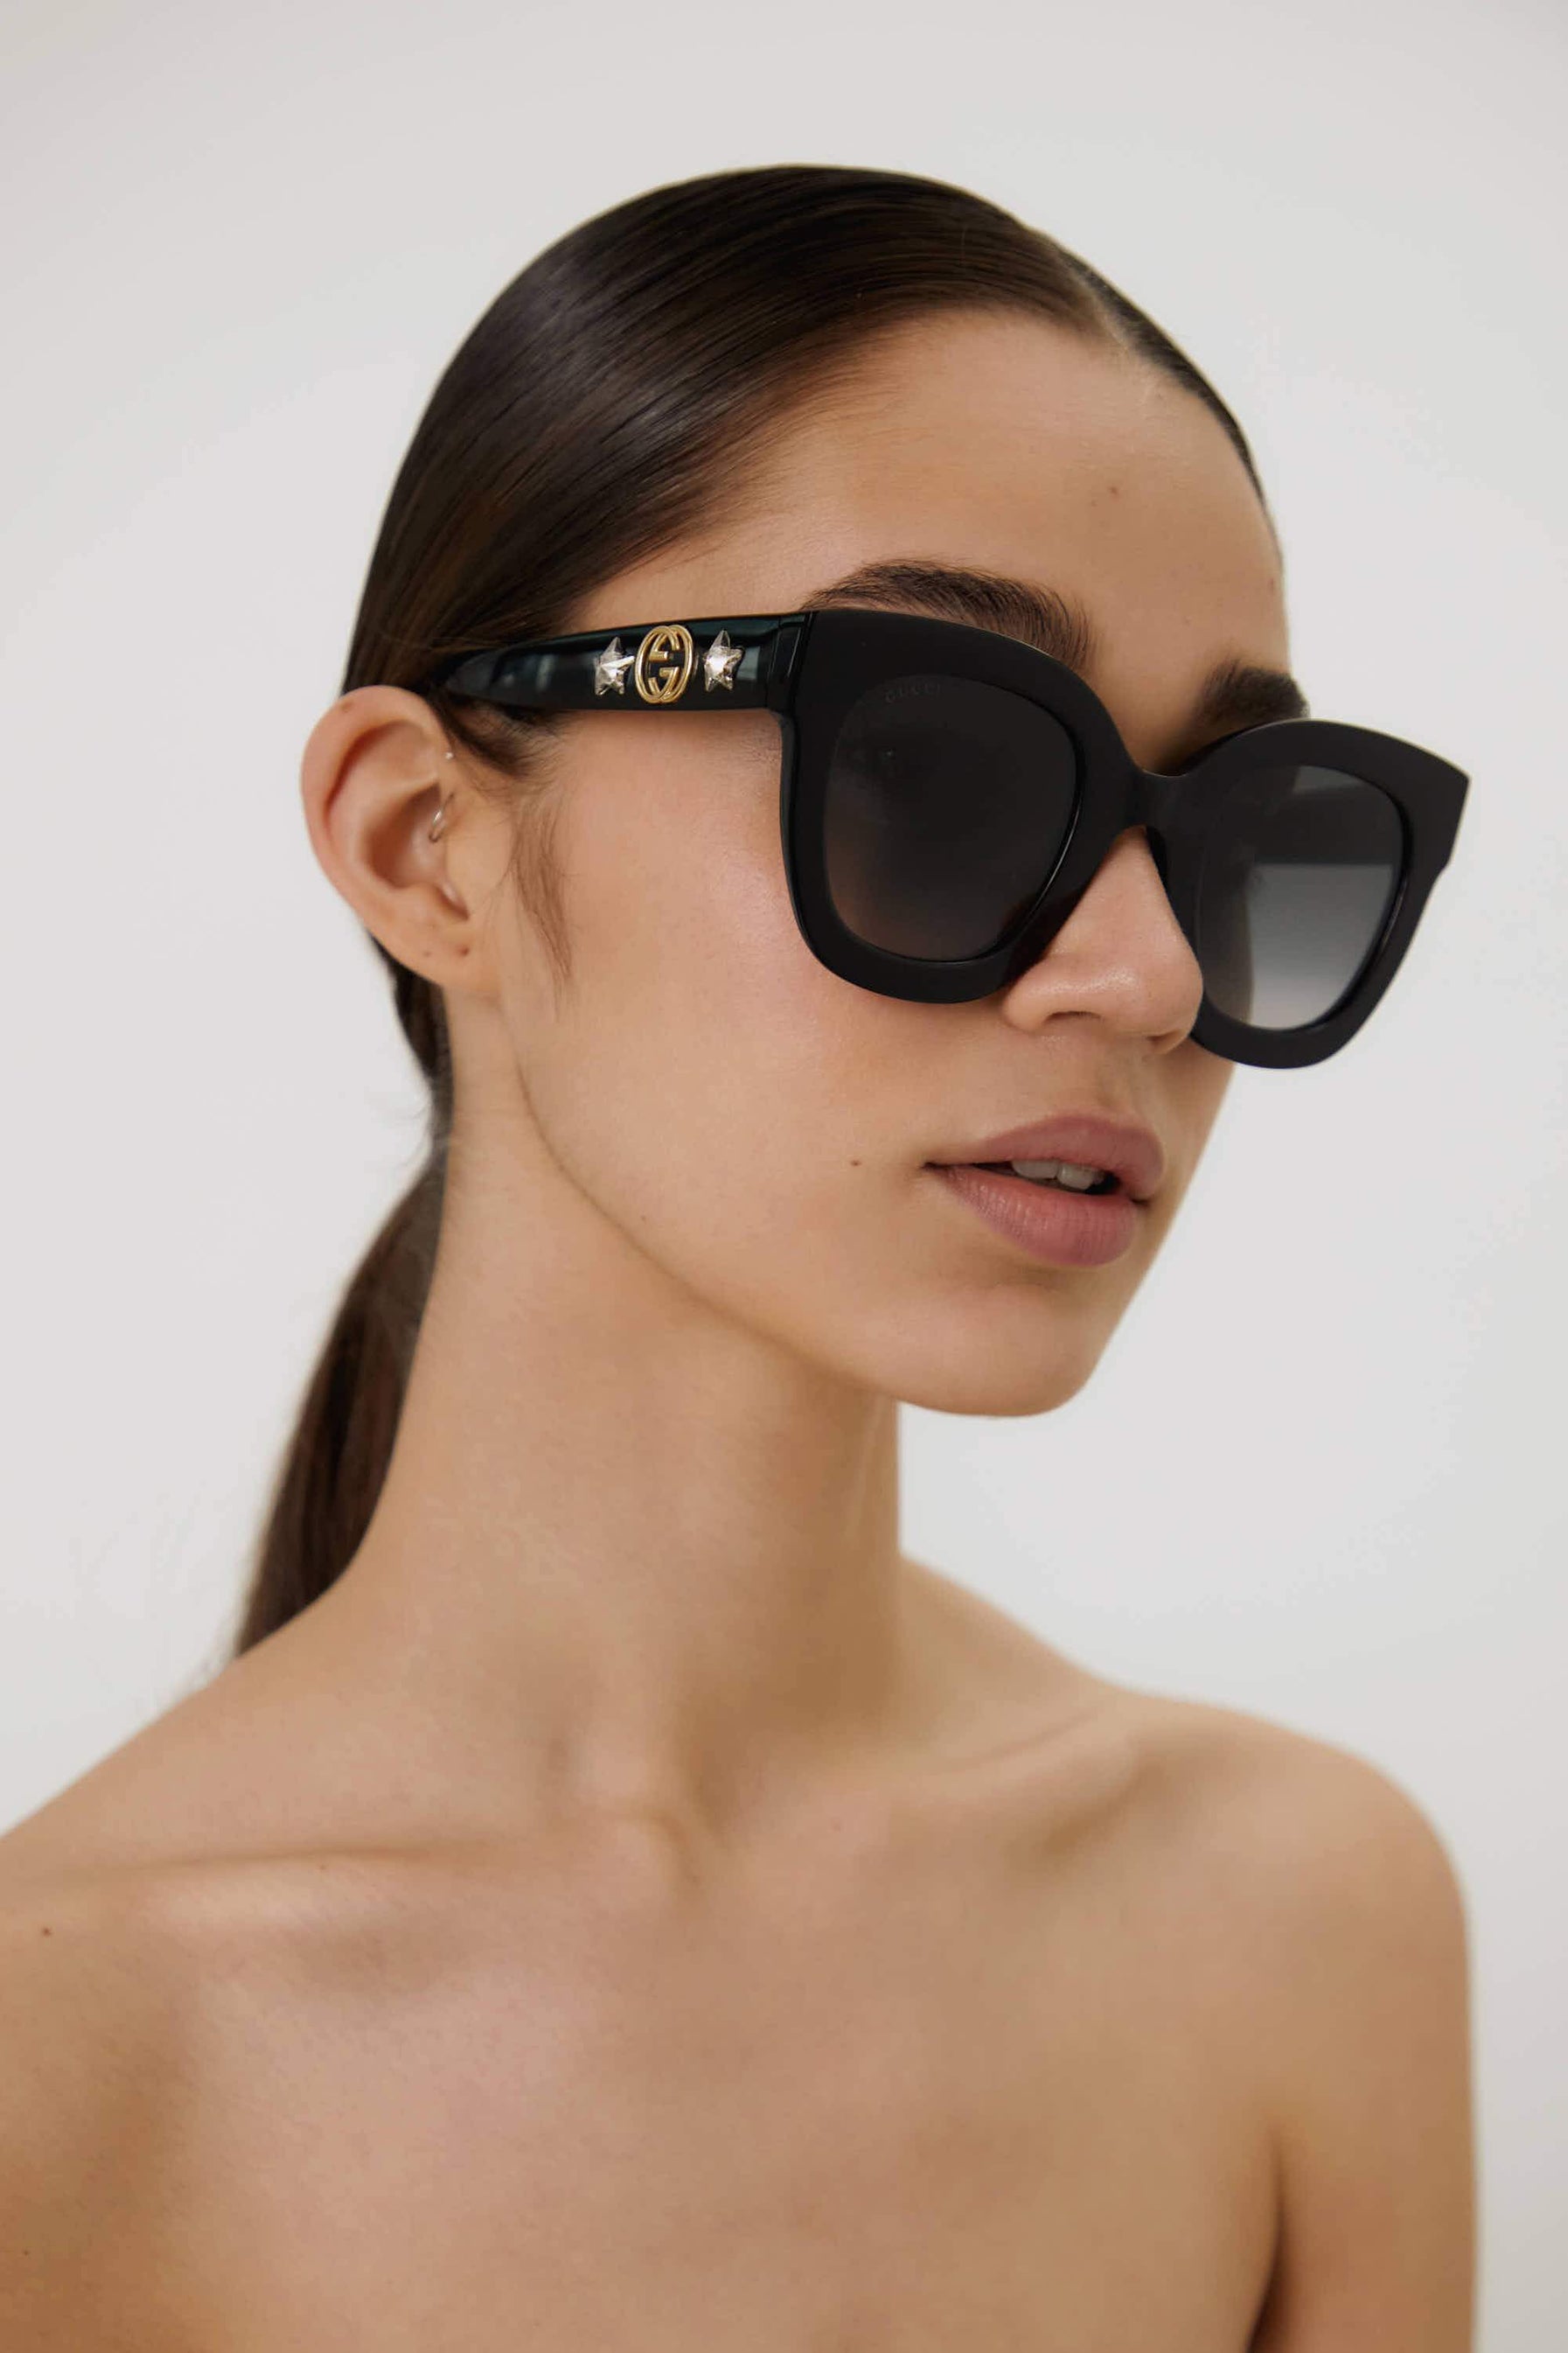 Gucci sunglasses women 